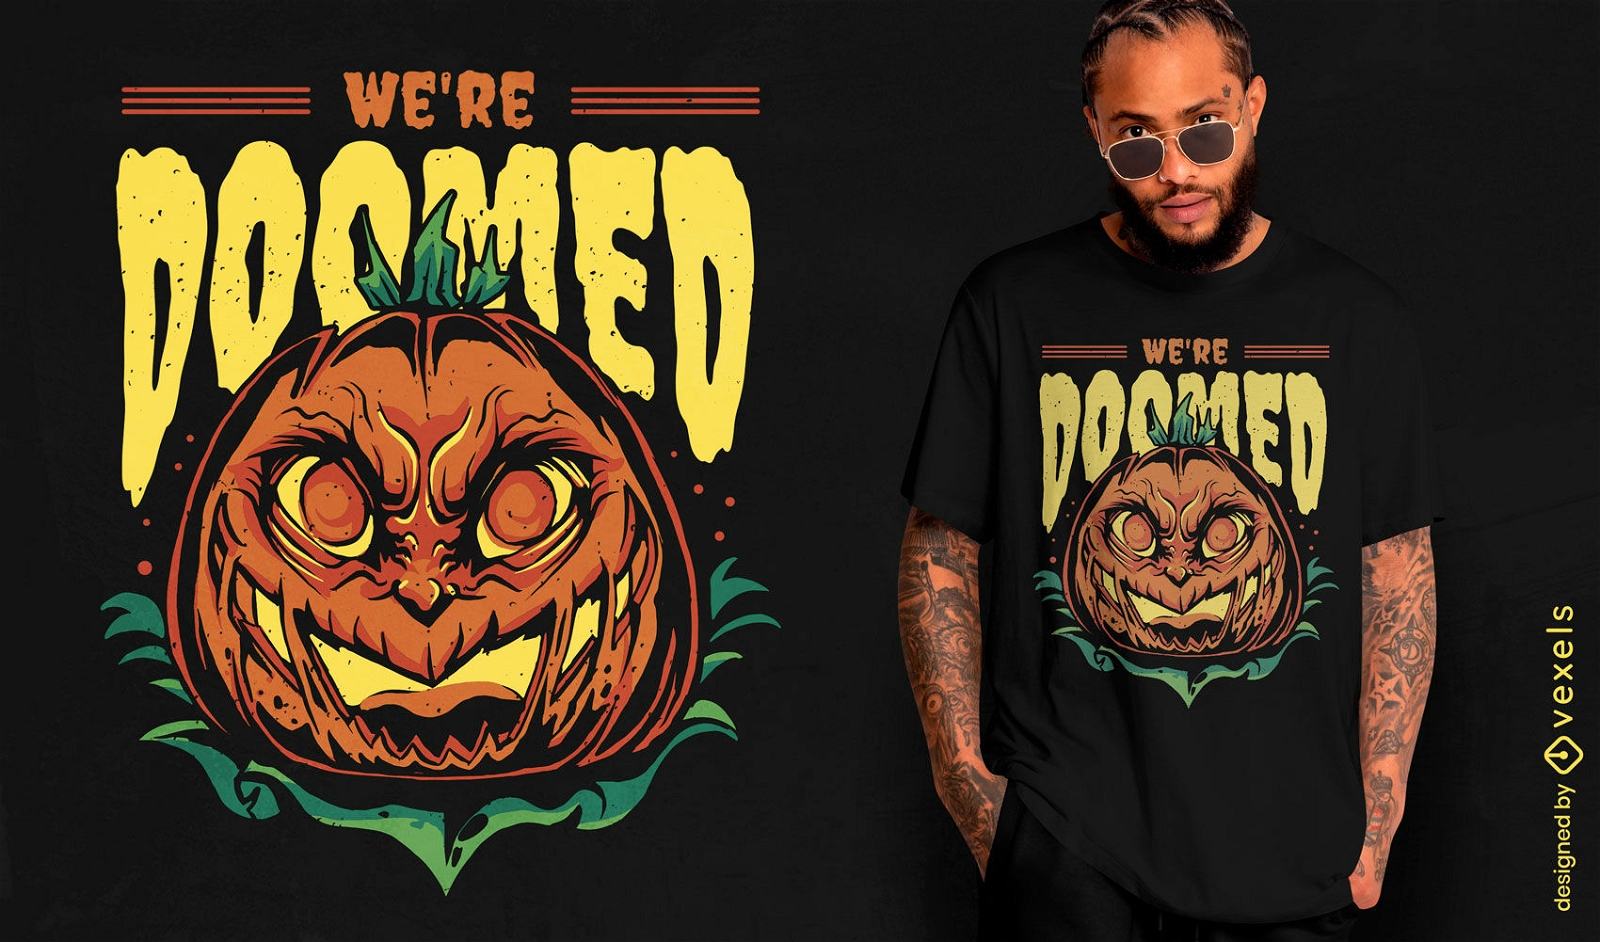 We're doomed pumpkin t-shirt design